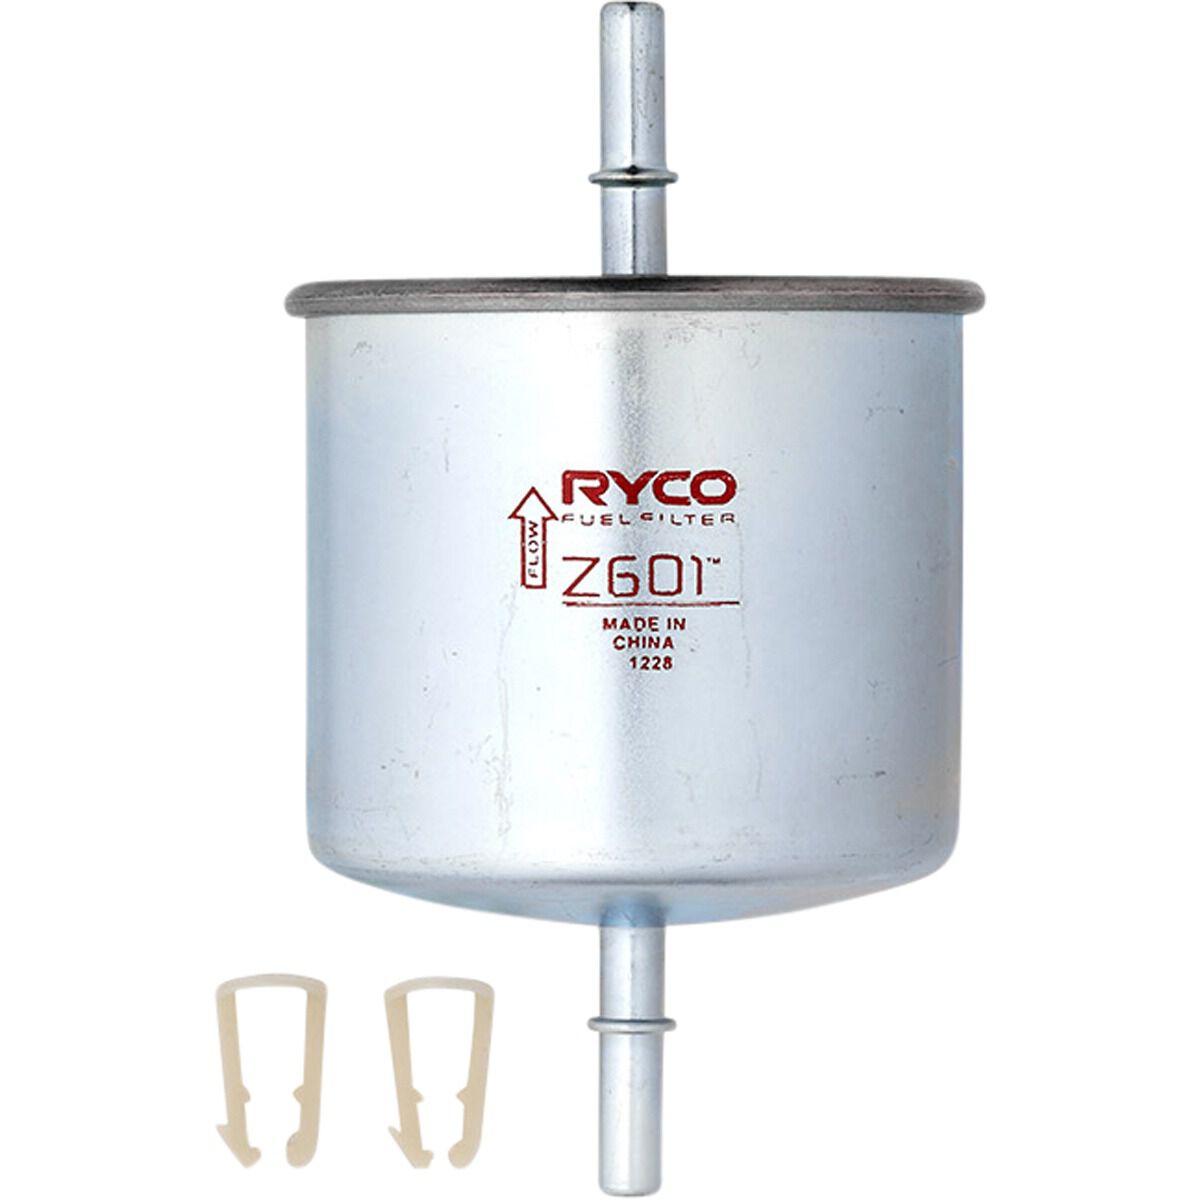 Ryco EFI Fuel Filter - Z601, , scaau_hi-res